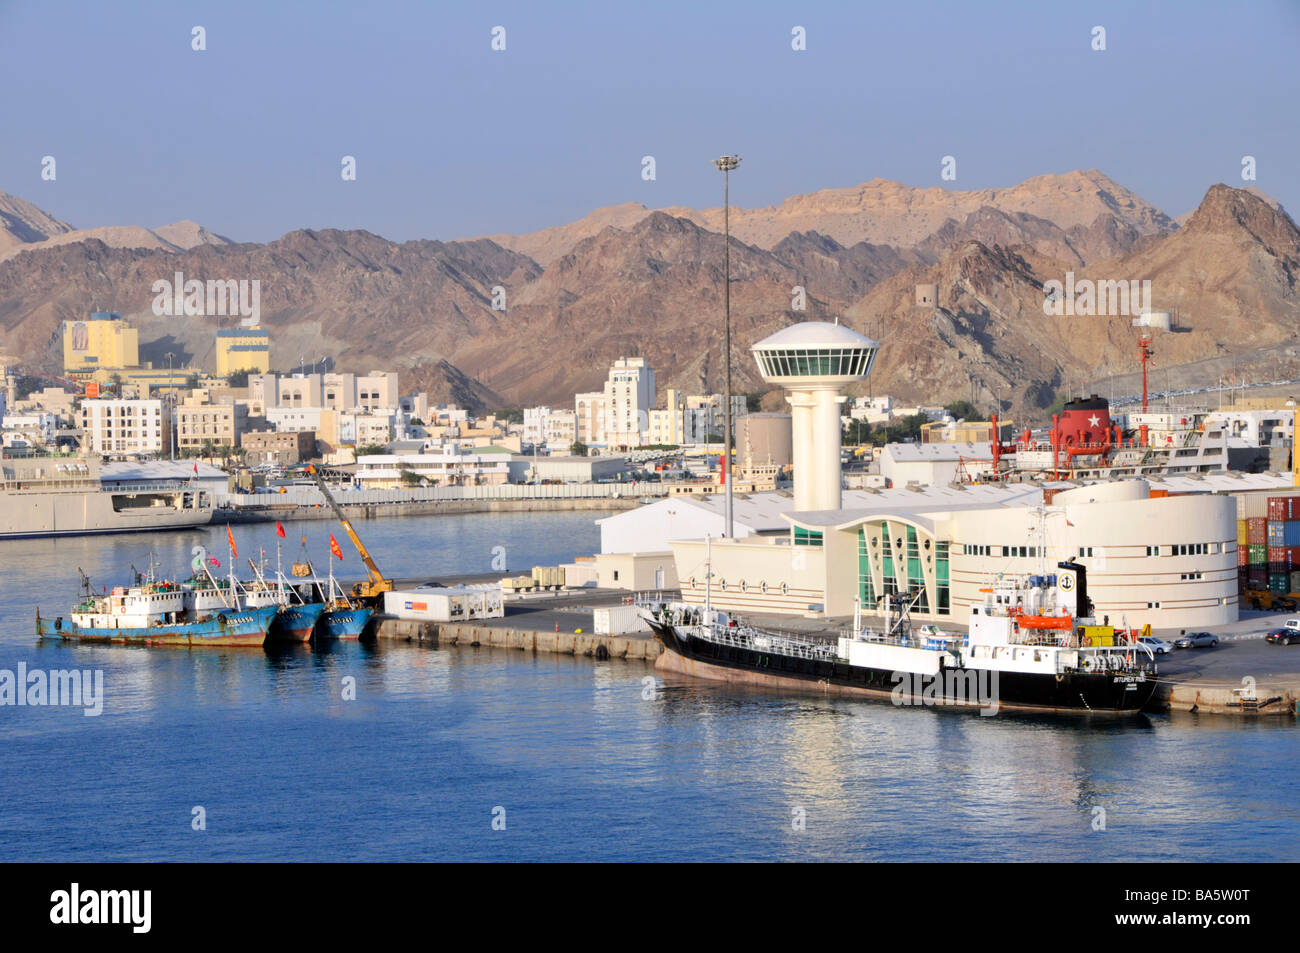 Felsenlandschaft am Ufer und Port Sultan Qaboos in Muttrah werden auch als Mutrah Teil des Muscat Oman „Golf von Oman“ Asien bezeichnet Stockfoto